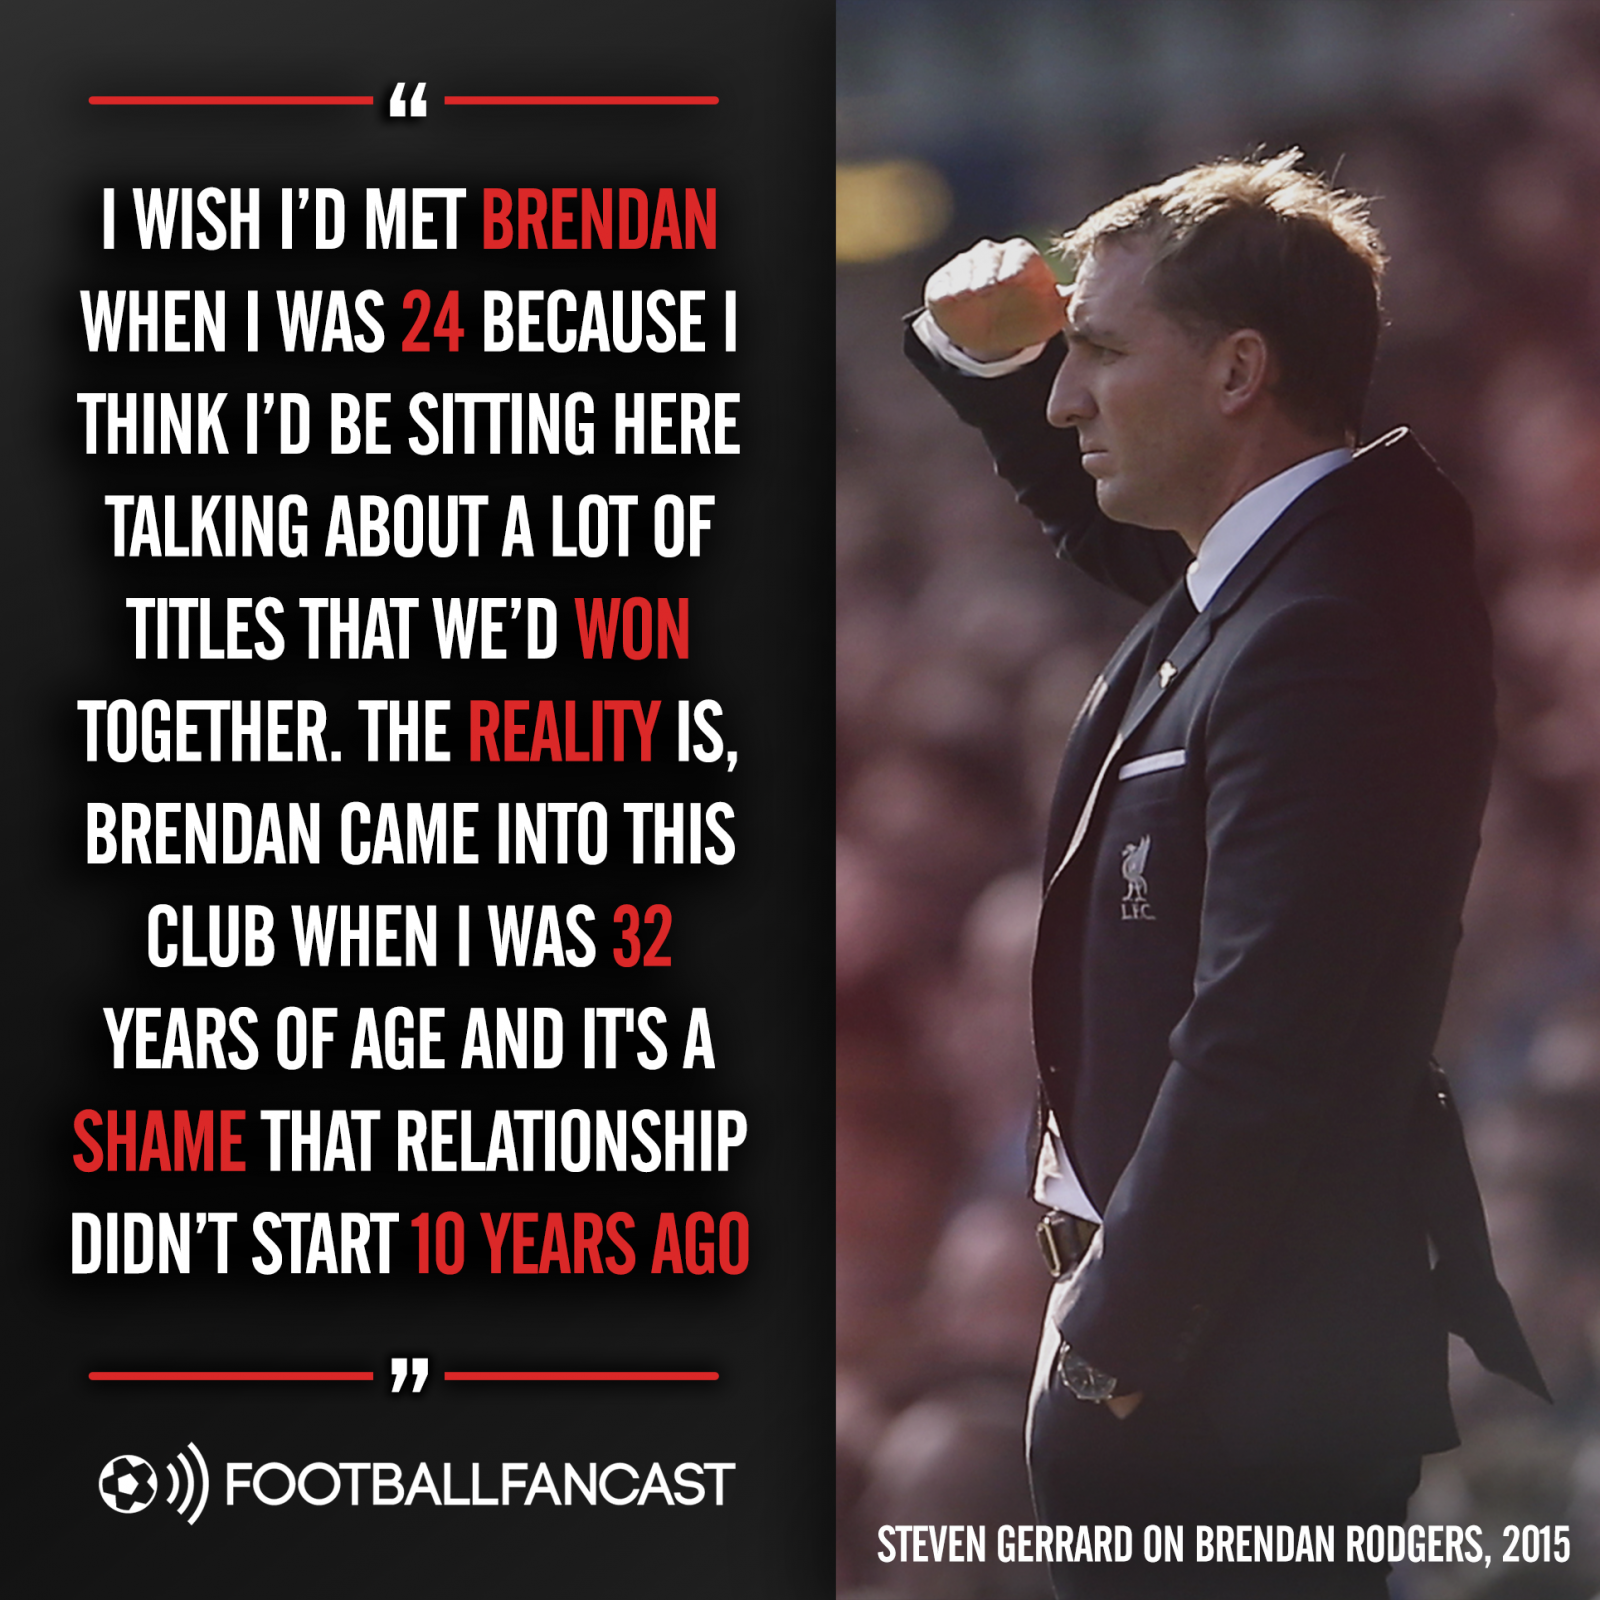 Steven Gerrard quote on wishing he'd met Brendan Rodgers at 24